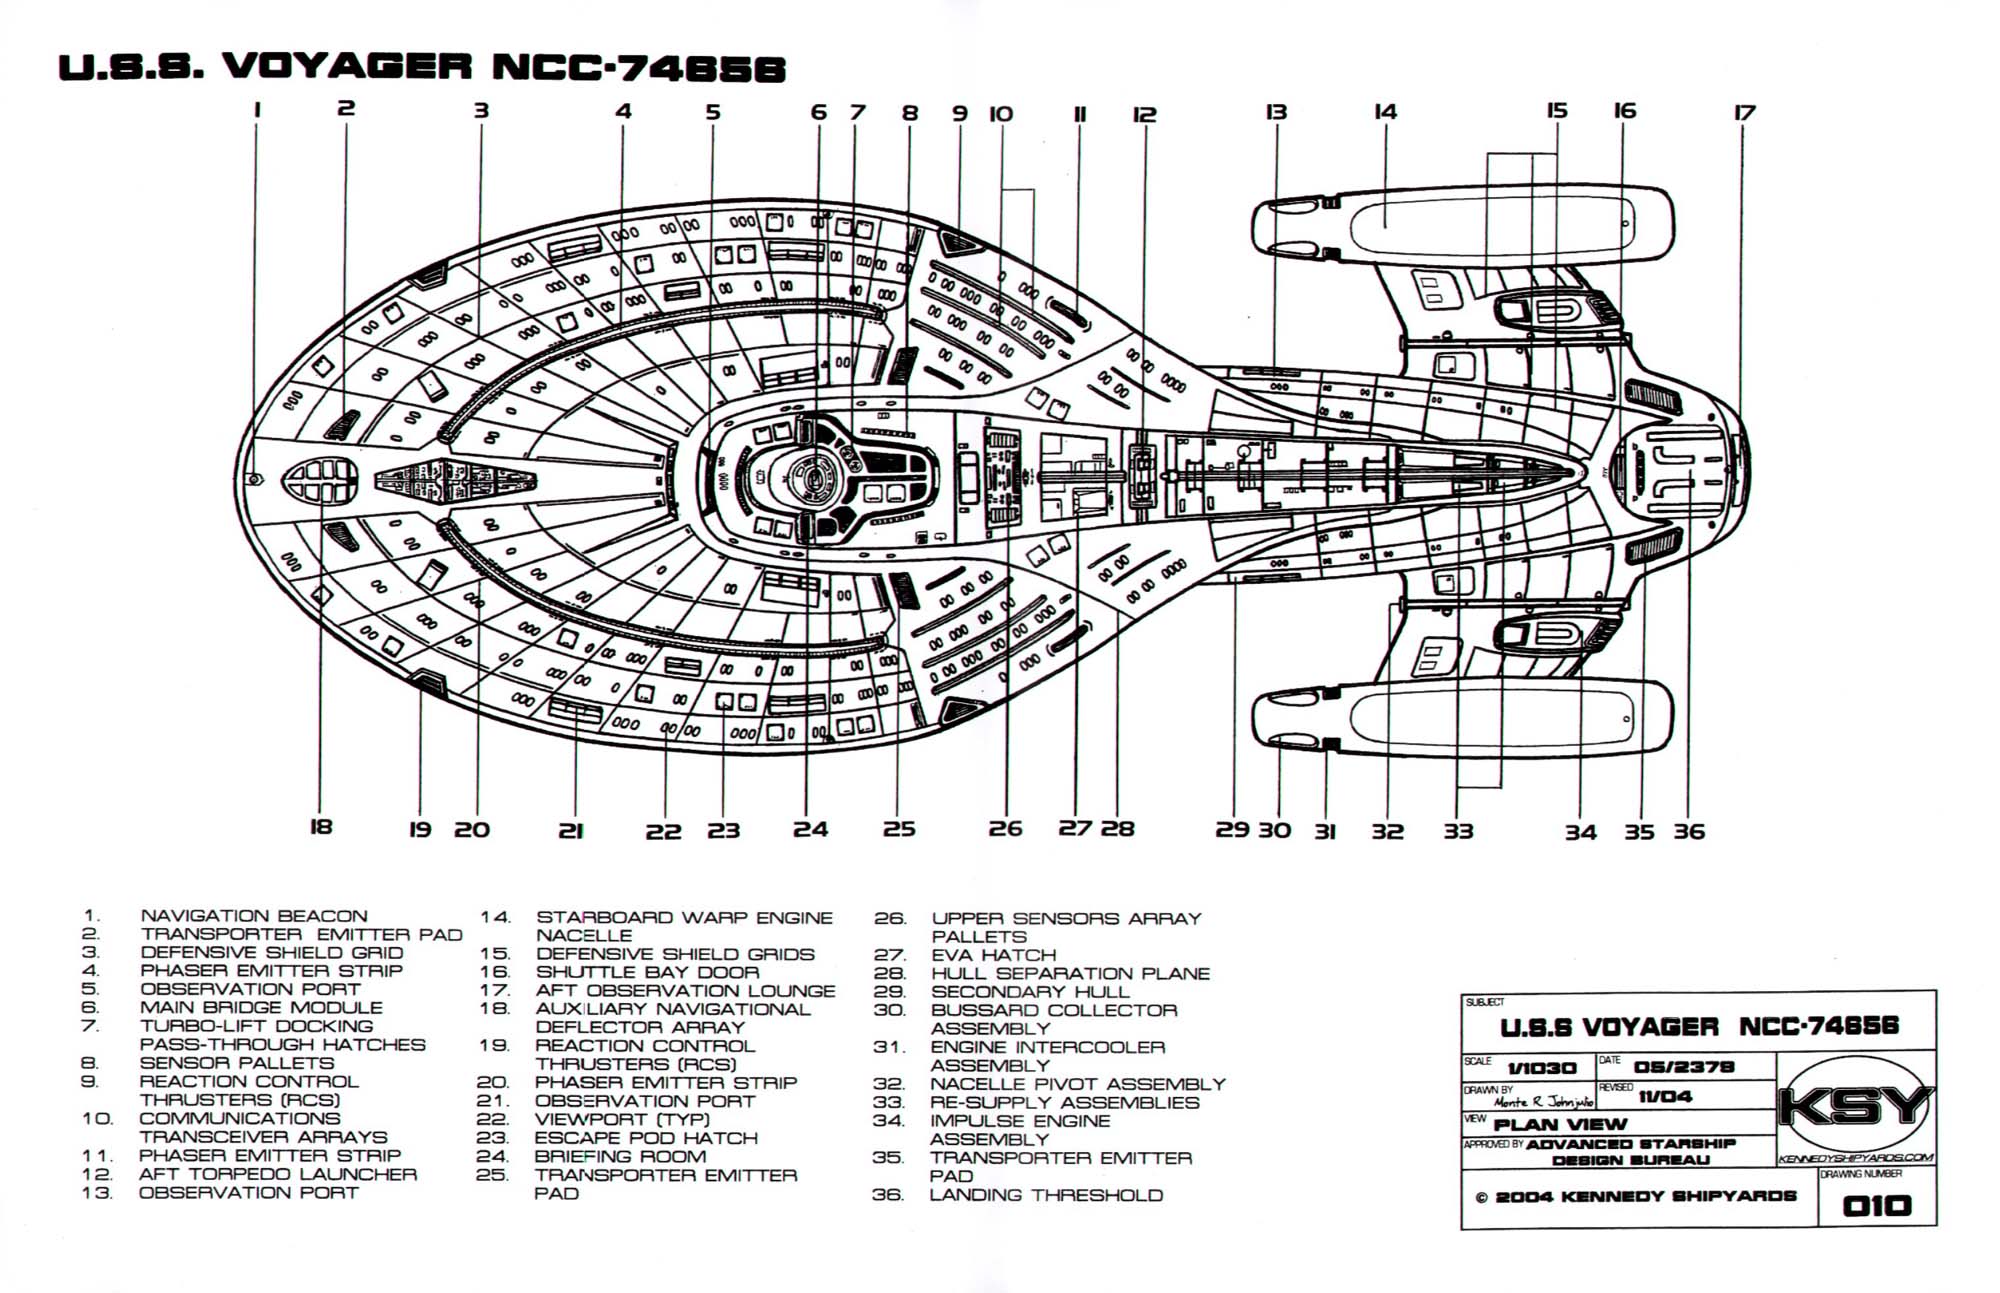 star trek voyager ship layout